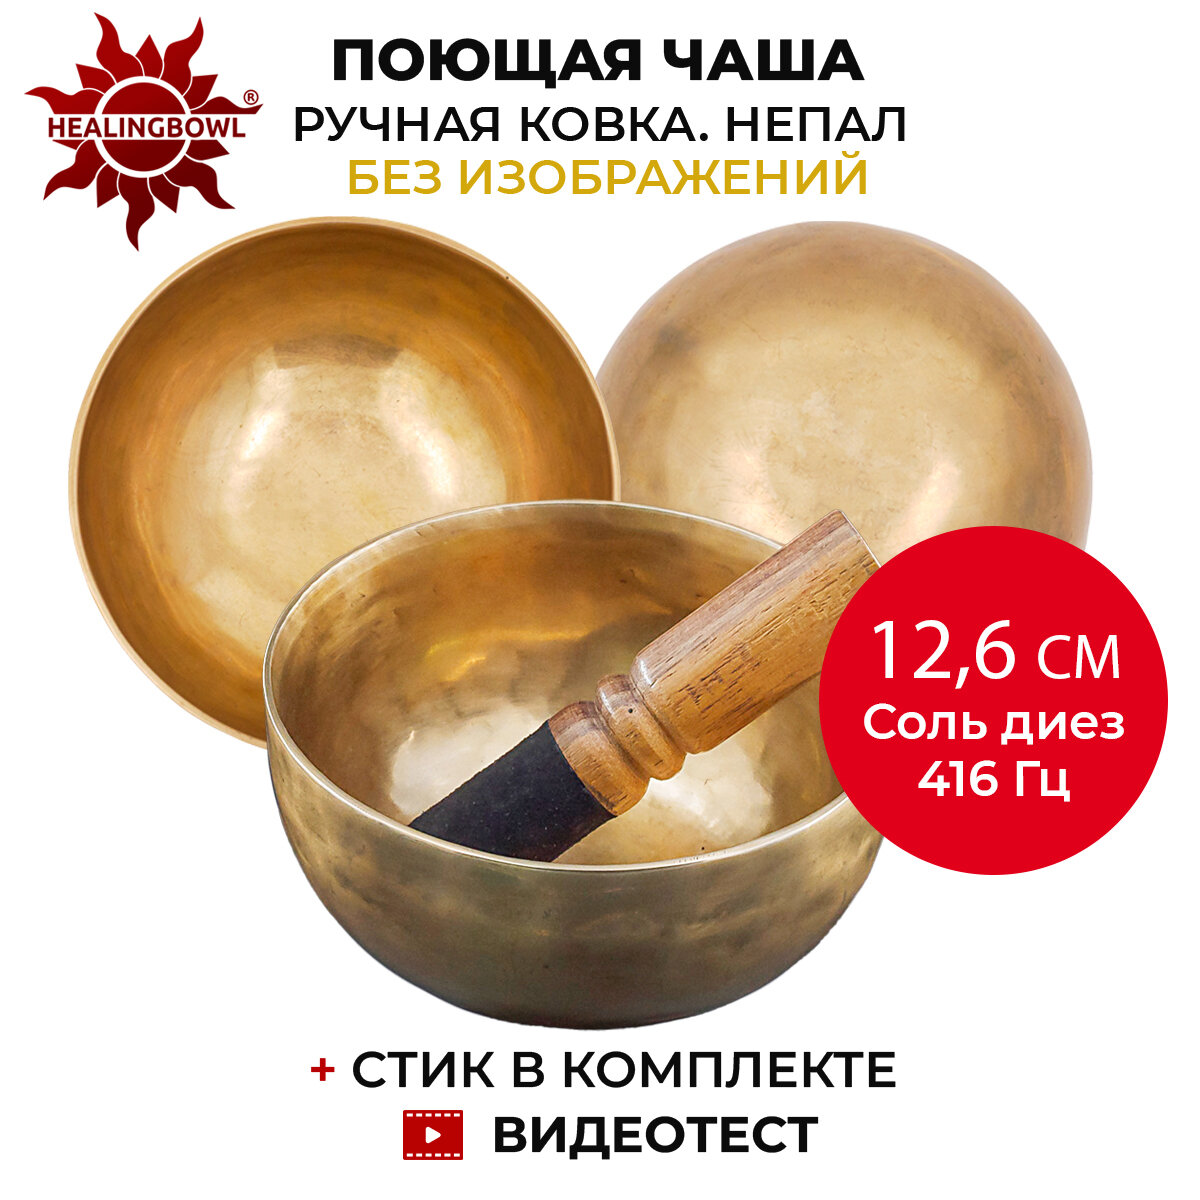 Healingbowl / Кованая поющая чаша без изображений 12,6 см Соль диез 416 Гц для йоги и медитации, сплав 5-7 металлов, Непал